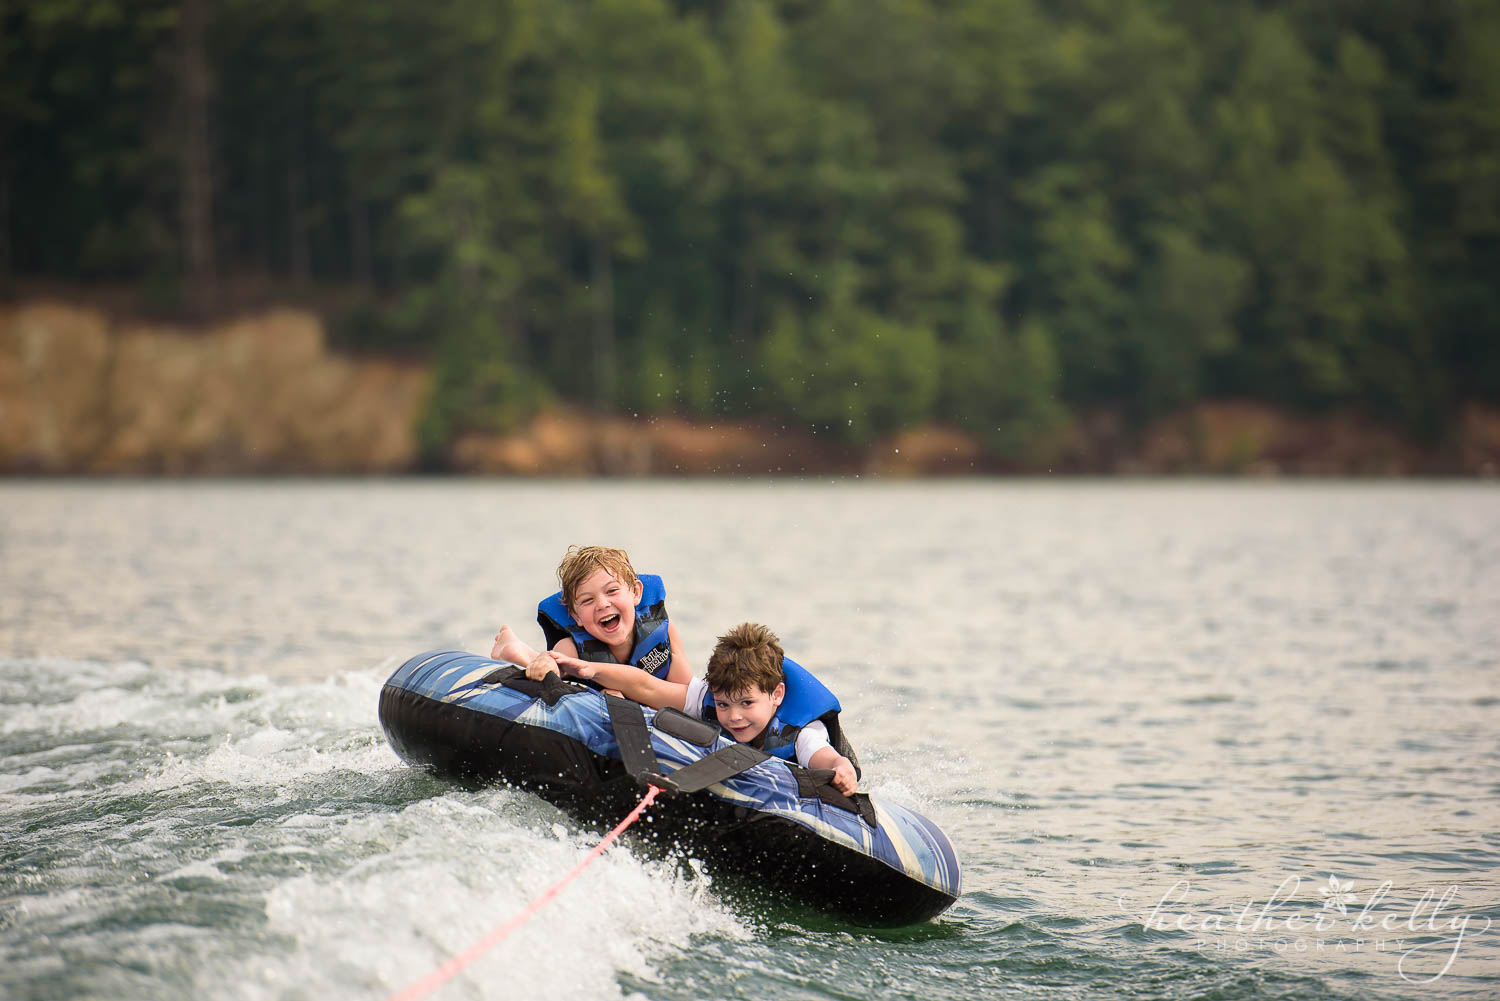 boys tubing on lake james nc